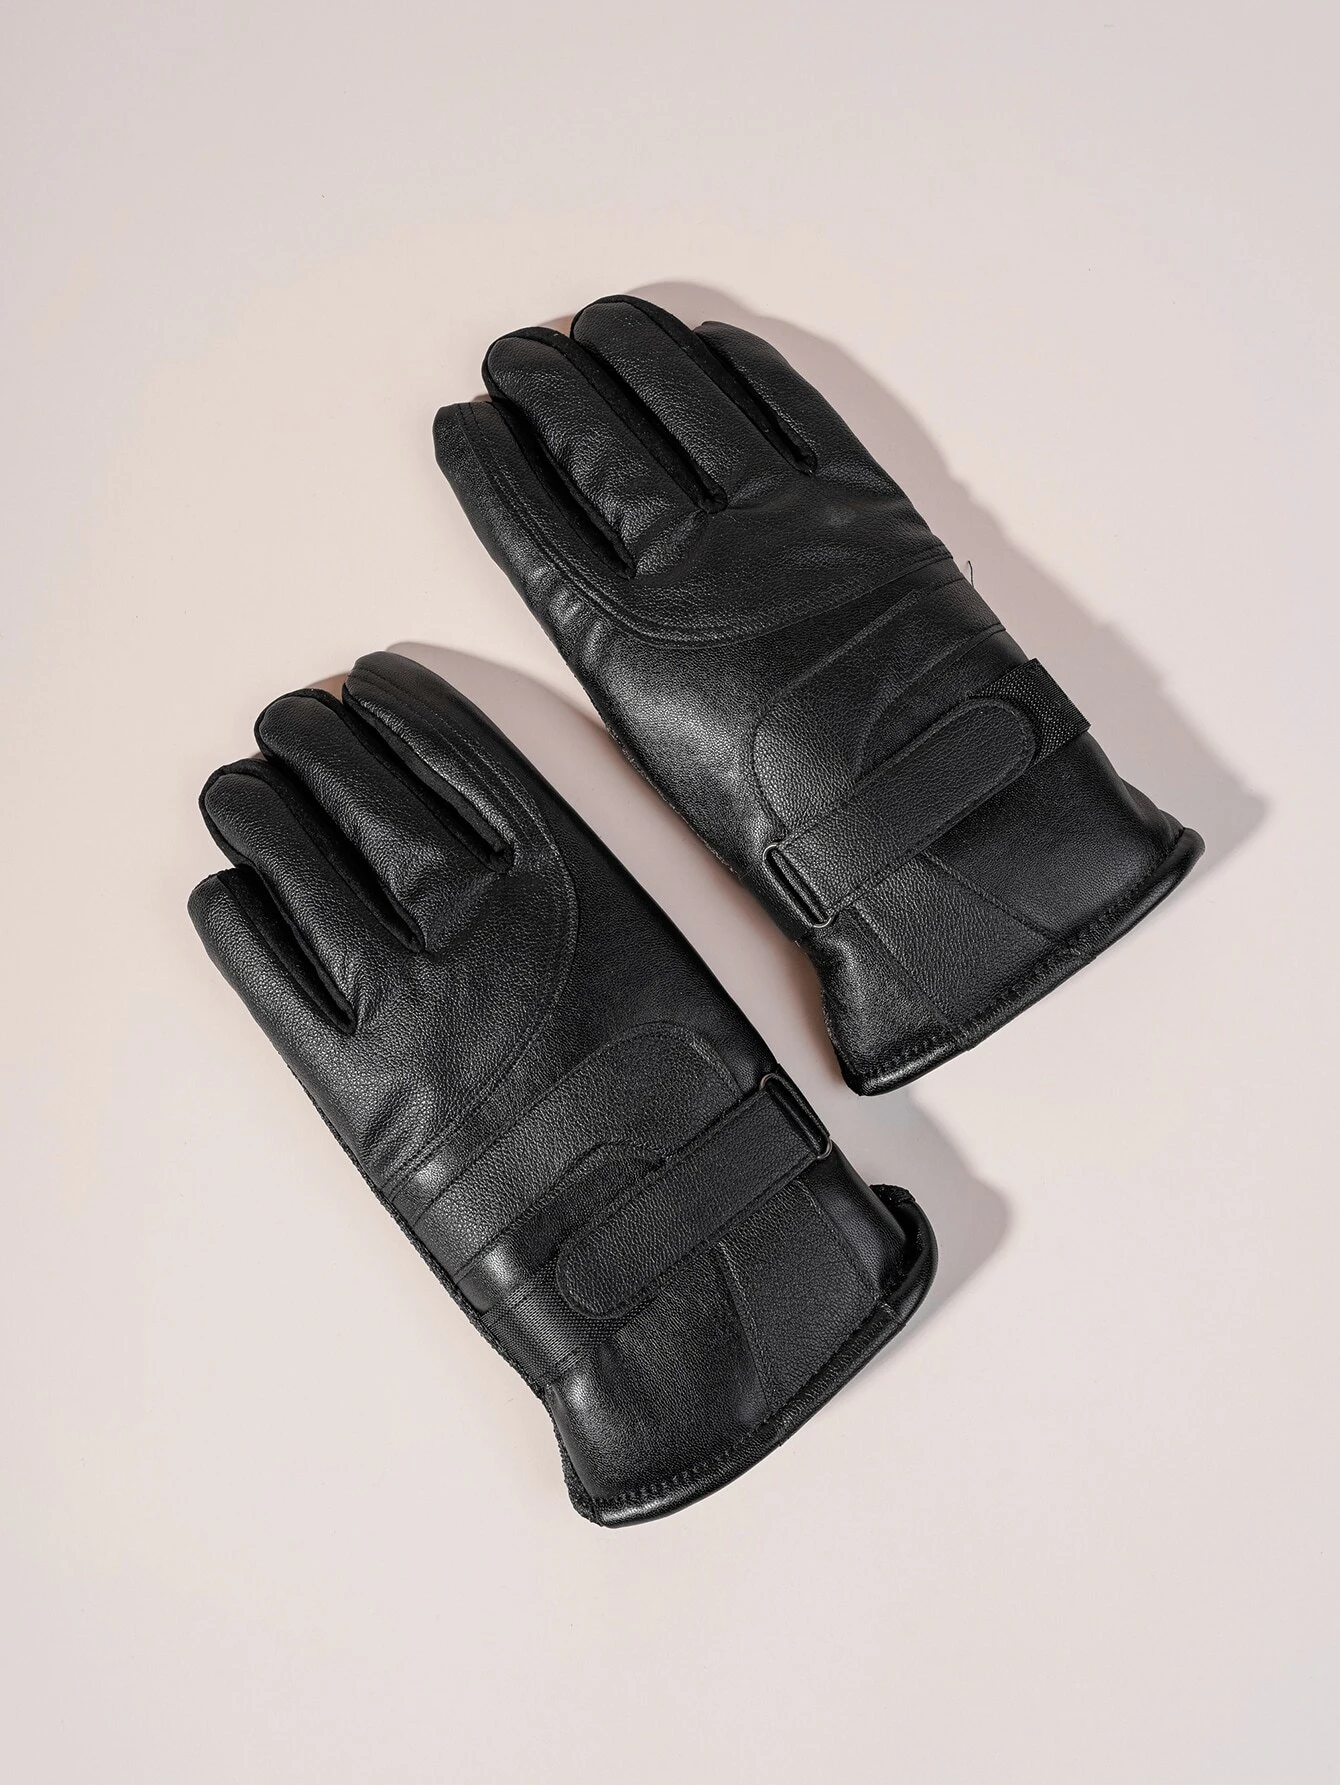 Ανδρικά δερμάτινα γάντια μαύρα για touch οθόνες